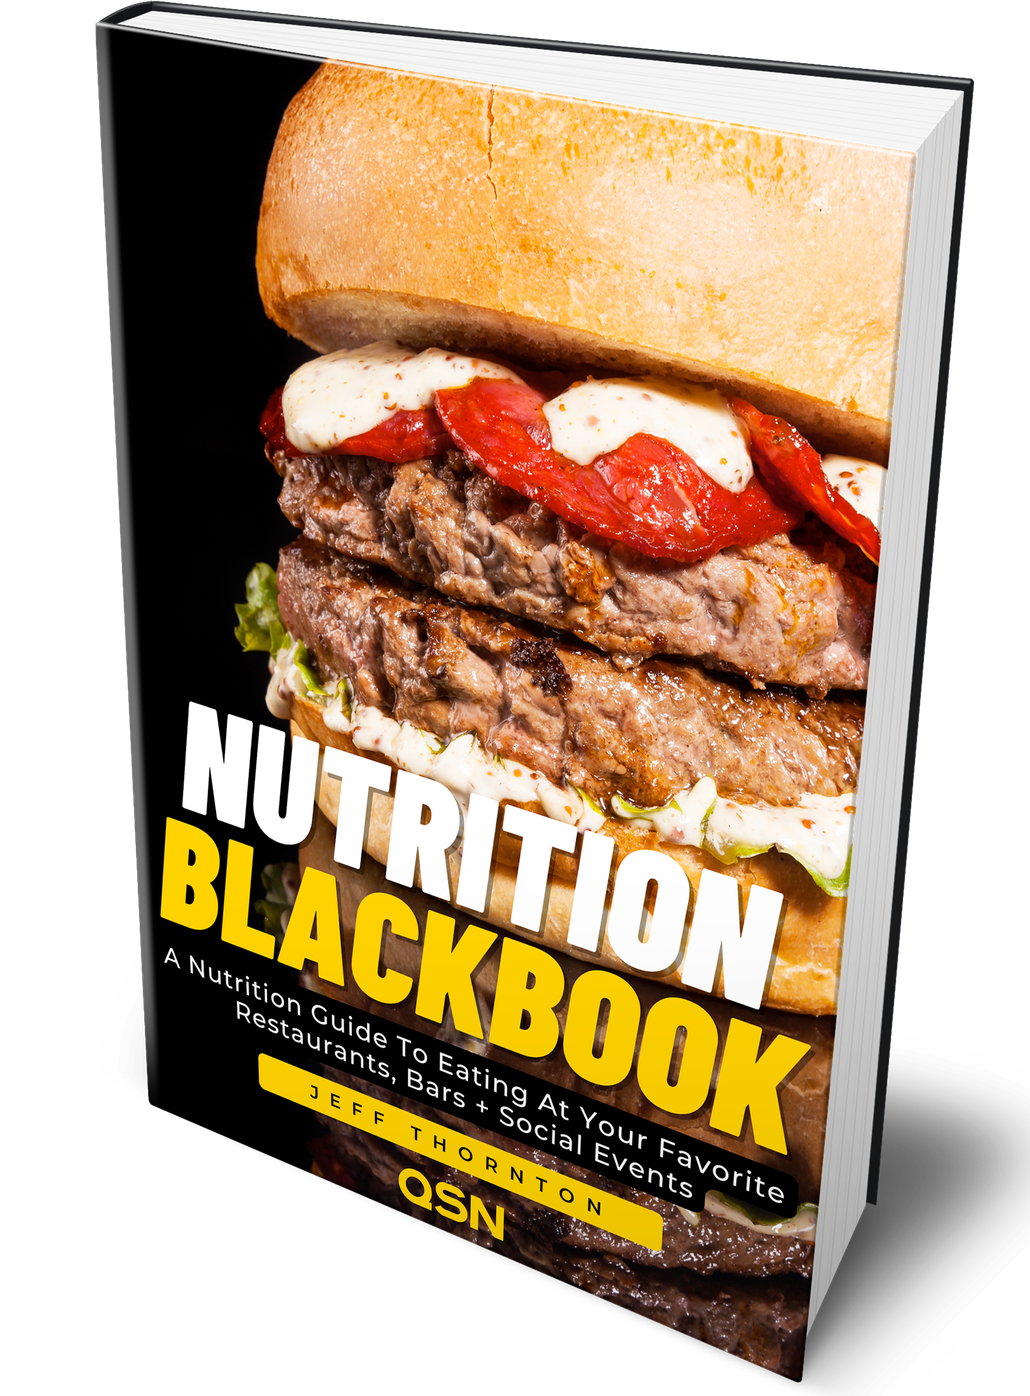 QSN Nutrition Blackbook